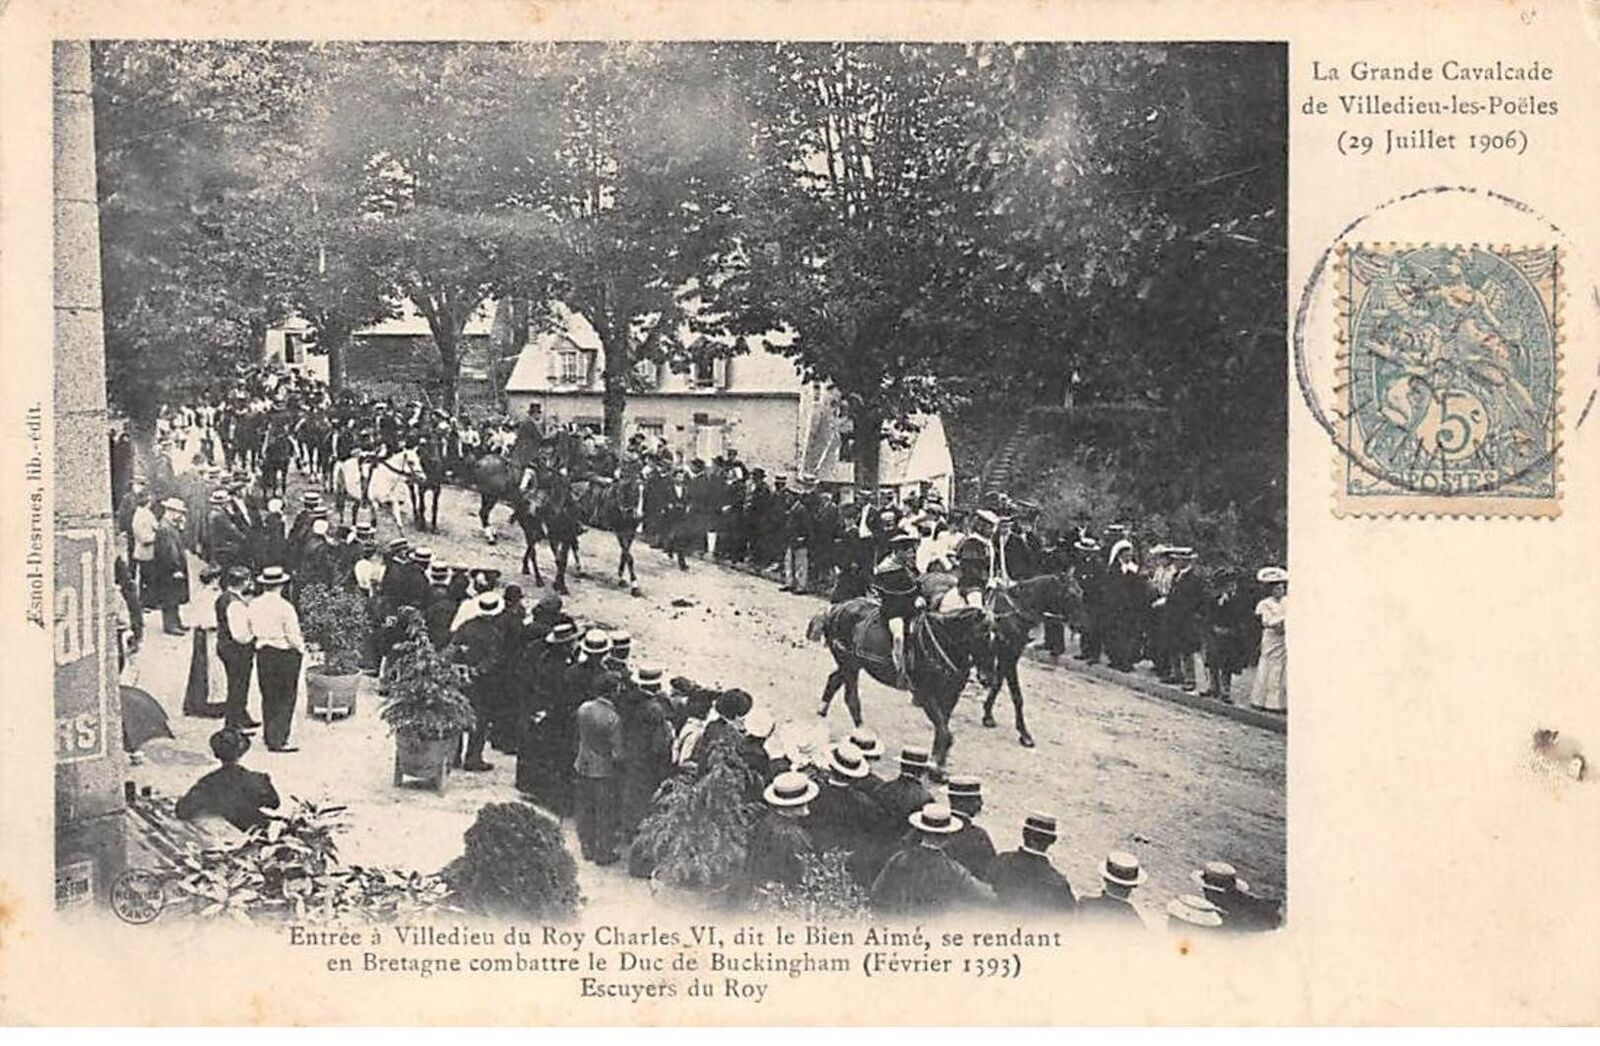 50 - VILLEDIEU LES POELES - SAN51682 - La grande Cavalcade 29 July 1906 - E